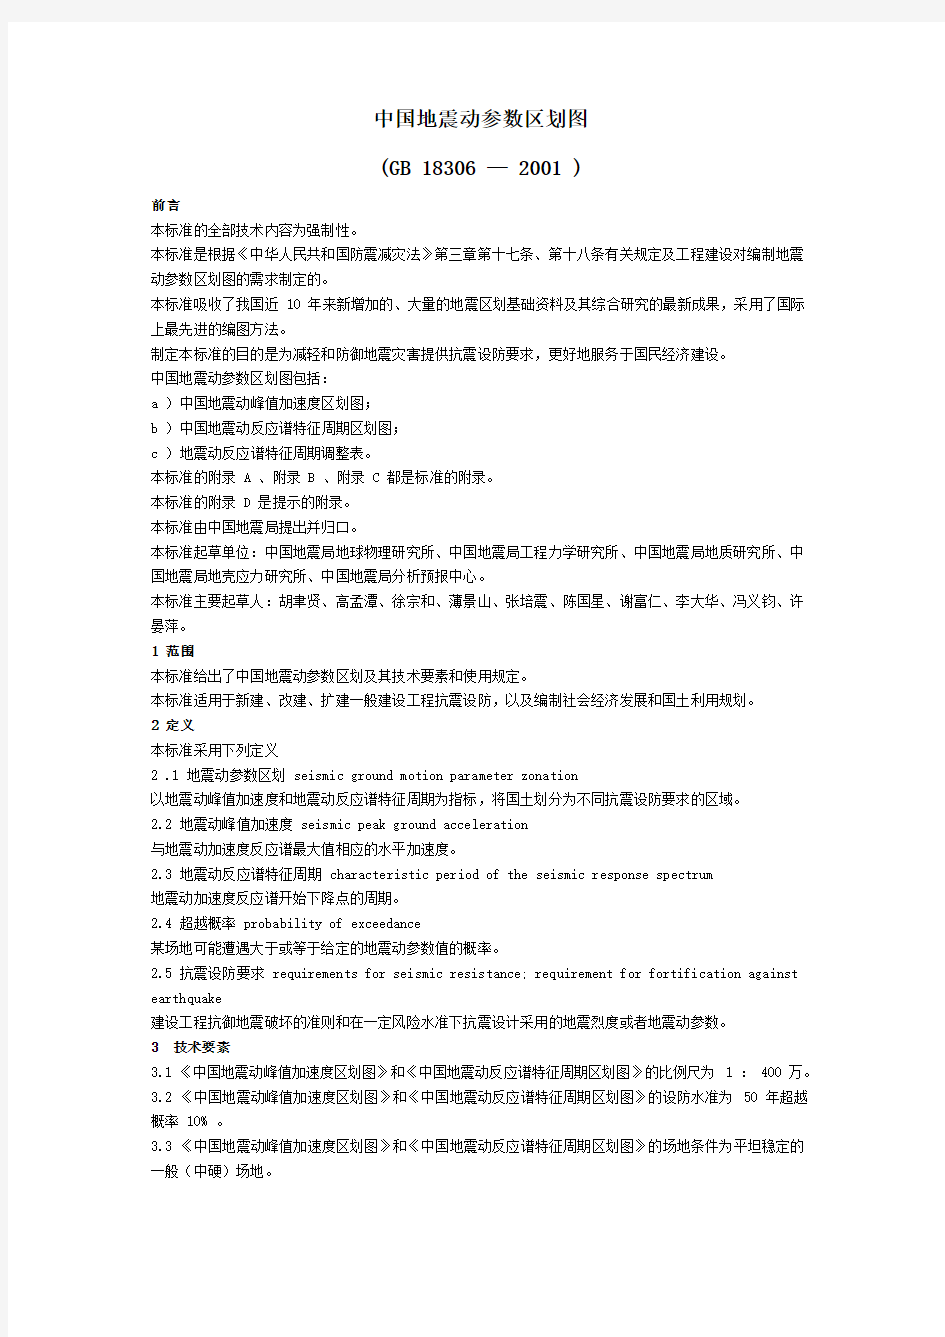 中国地震动参数区划图(GB18306-2001)文本